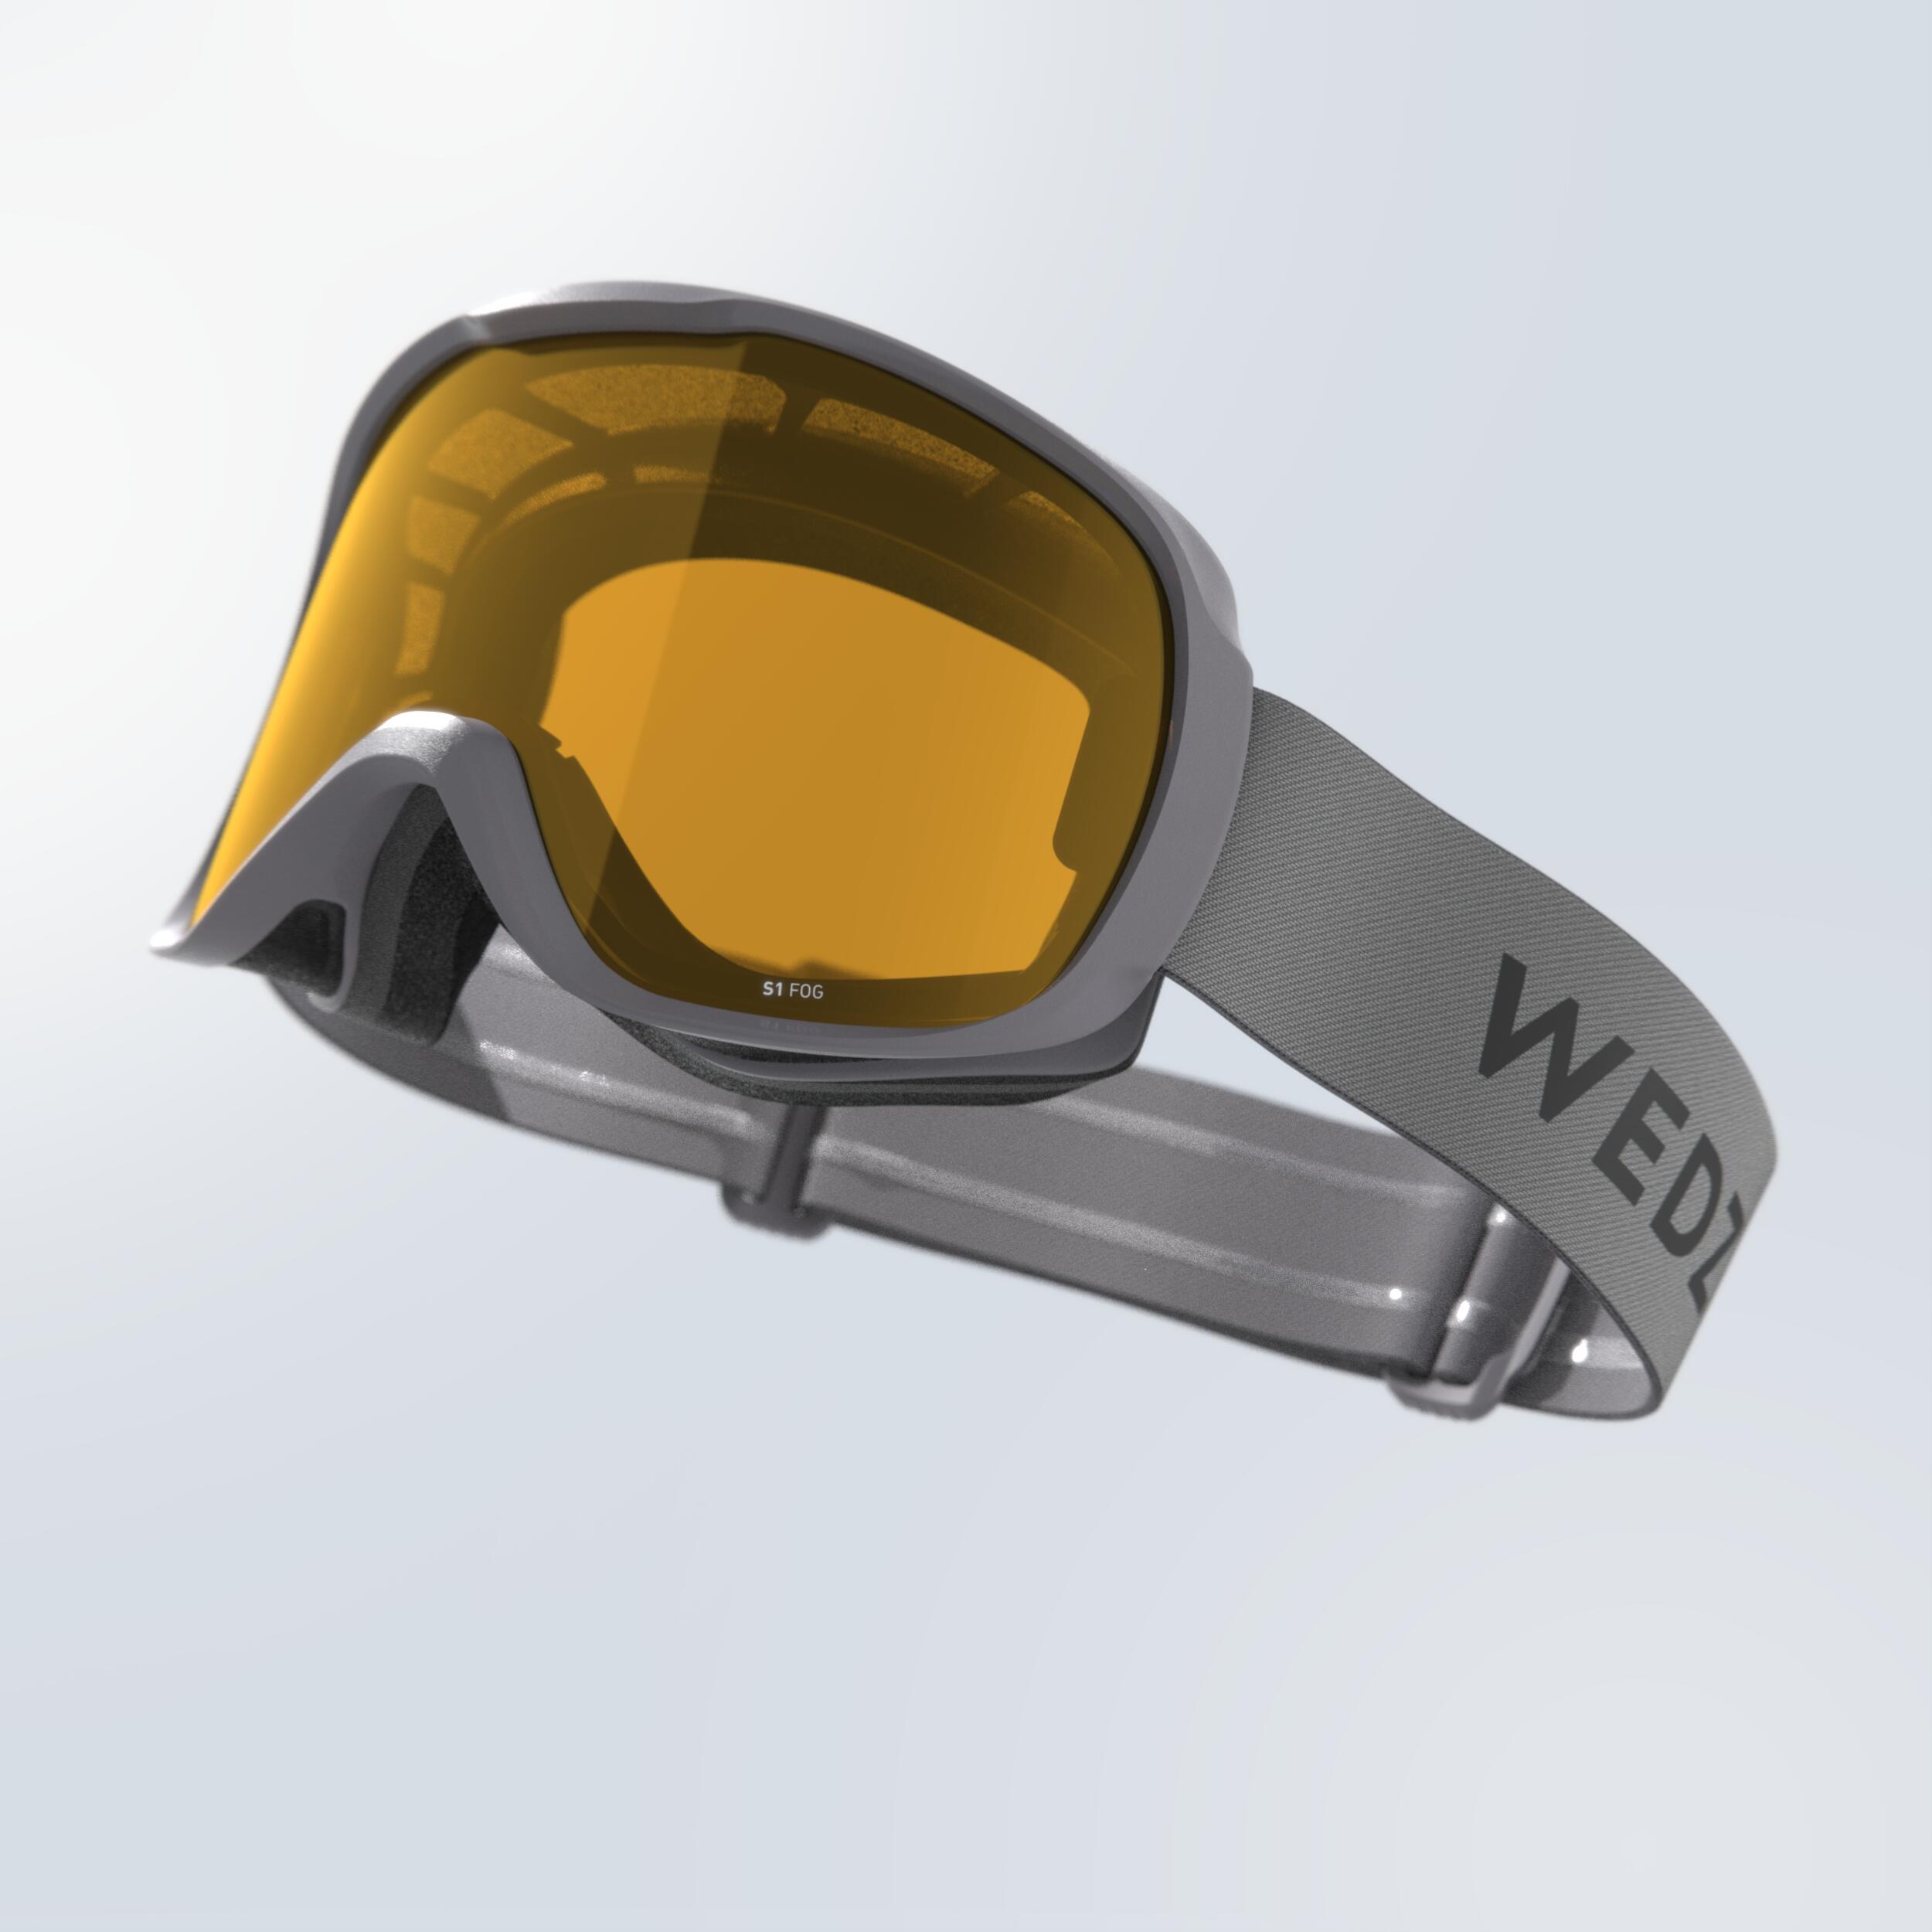 Skidglasögon Snowboard Dåligt Väder - G 500 S1 - Junior/vuxen Grå